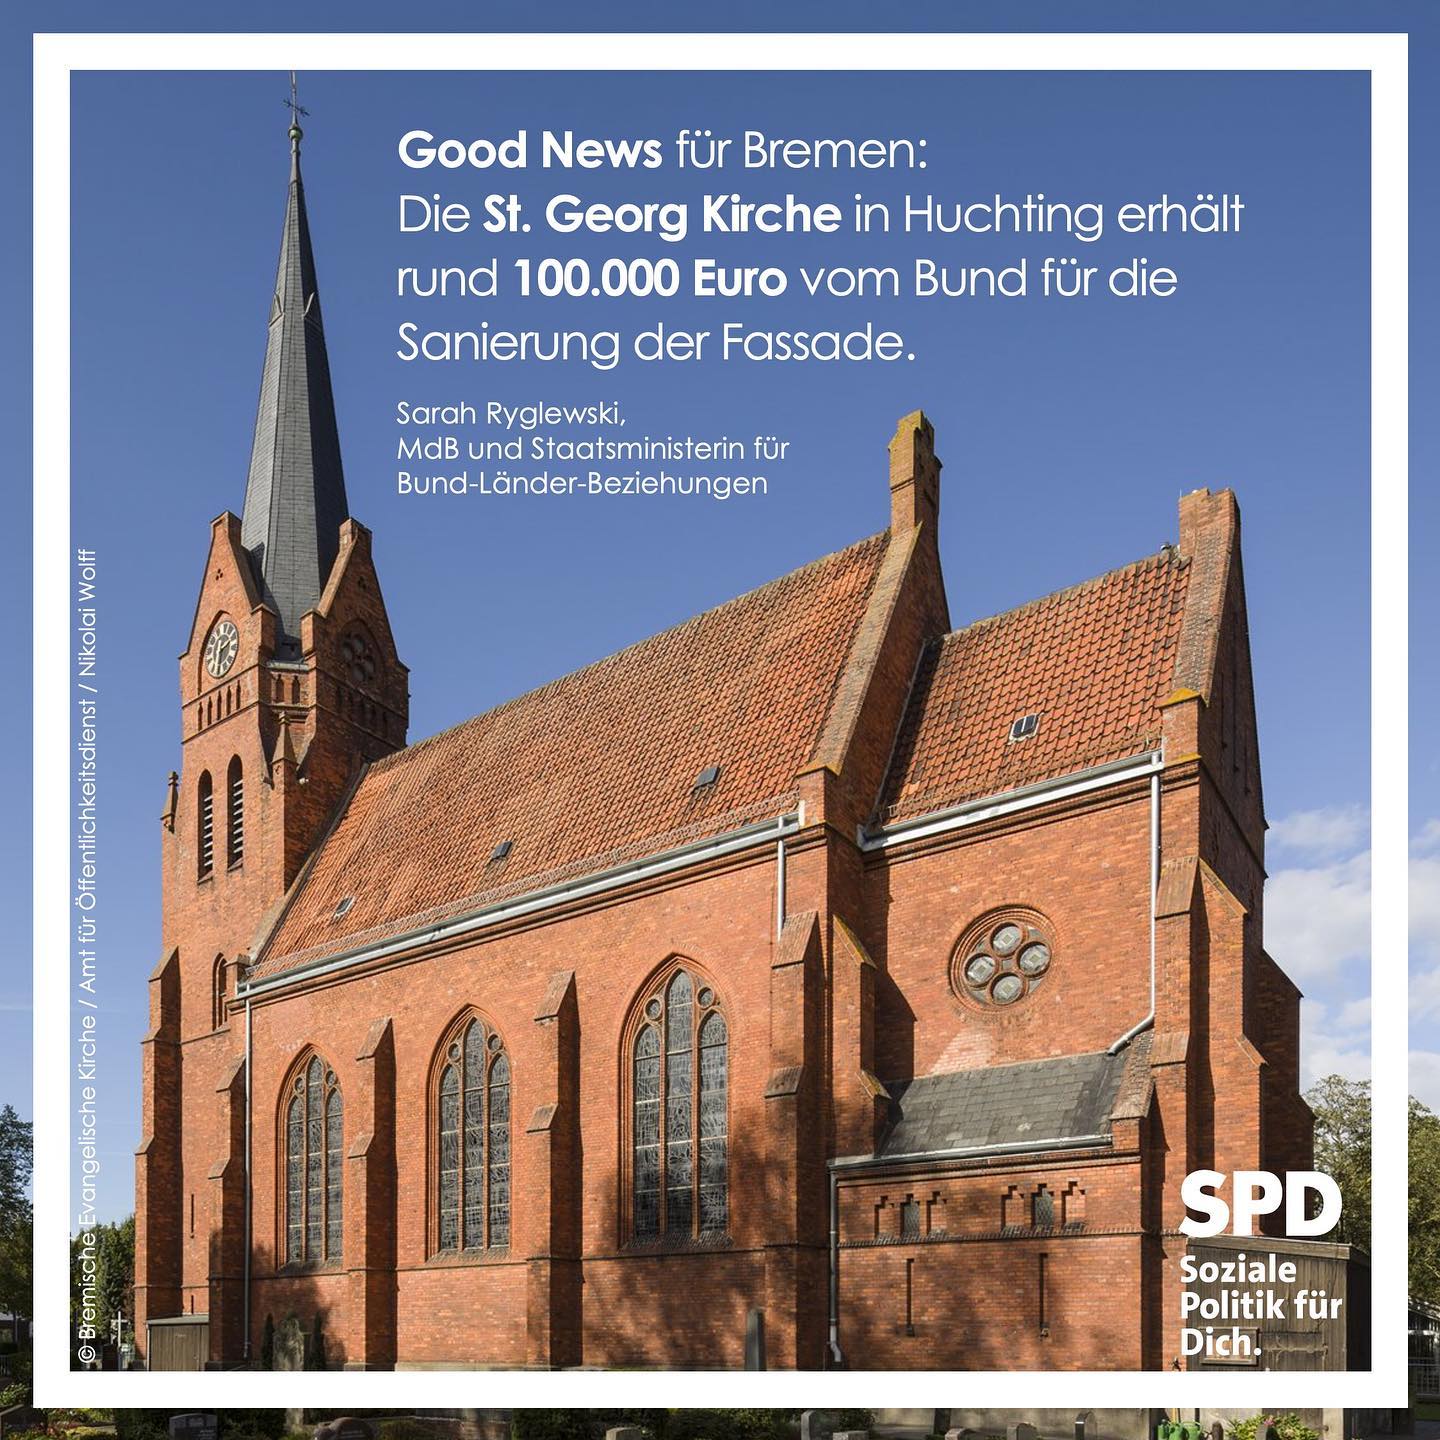 Huchtinger St. Georg Kirche erhält Bundesmittel für Sanierung der Fassade